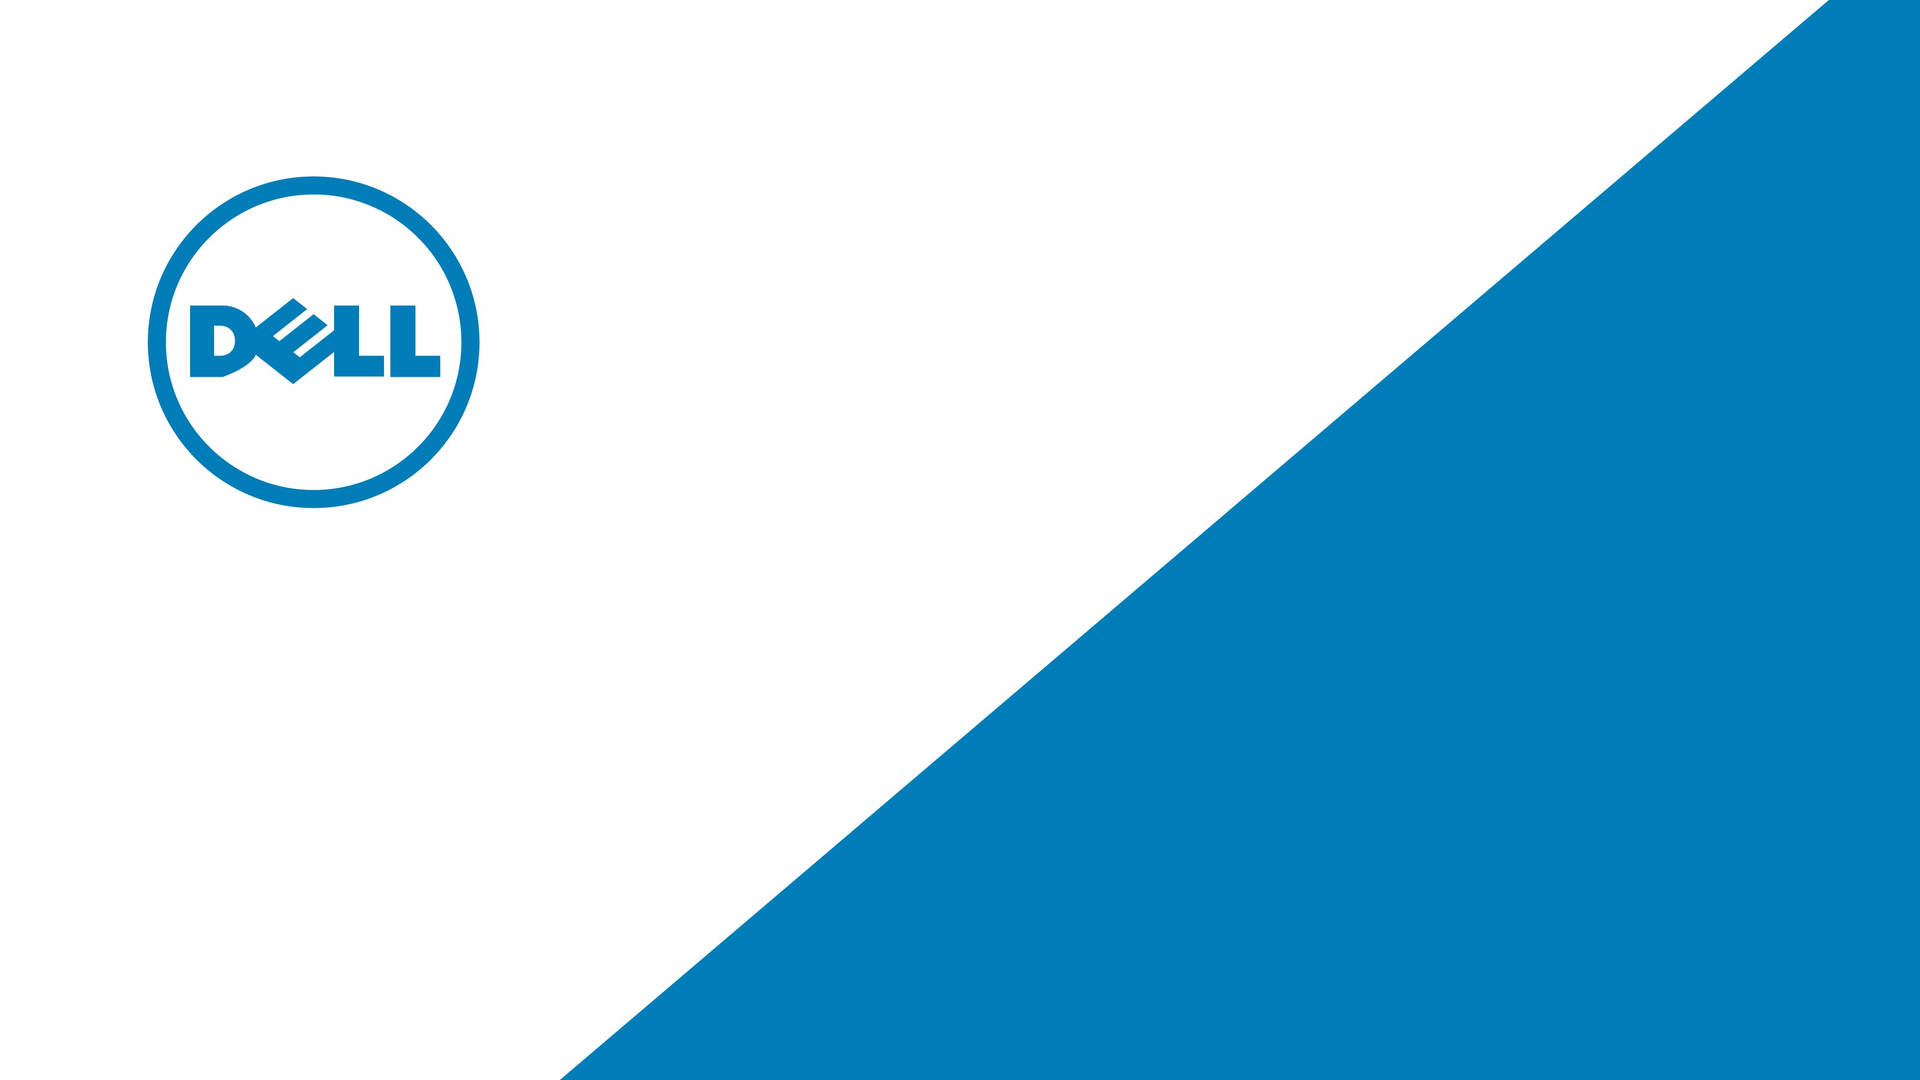 4k White And Blue Dell Logo Wallpaper